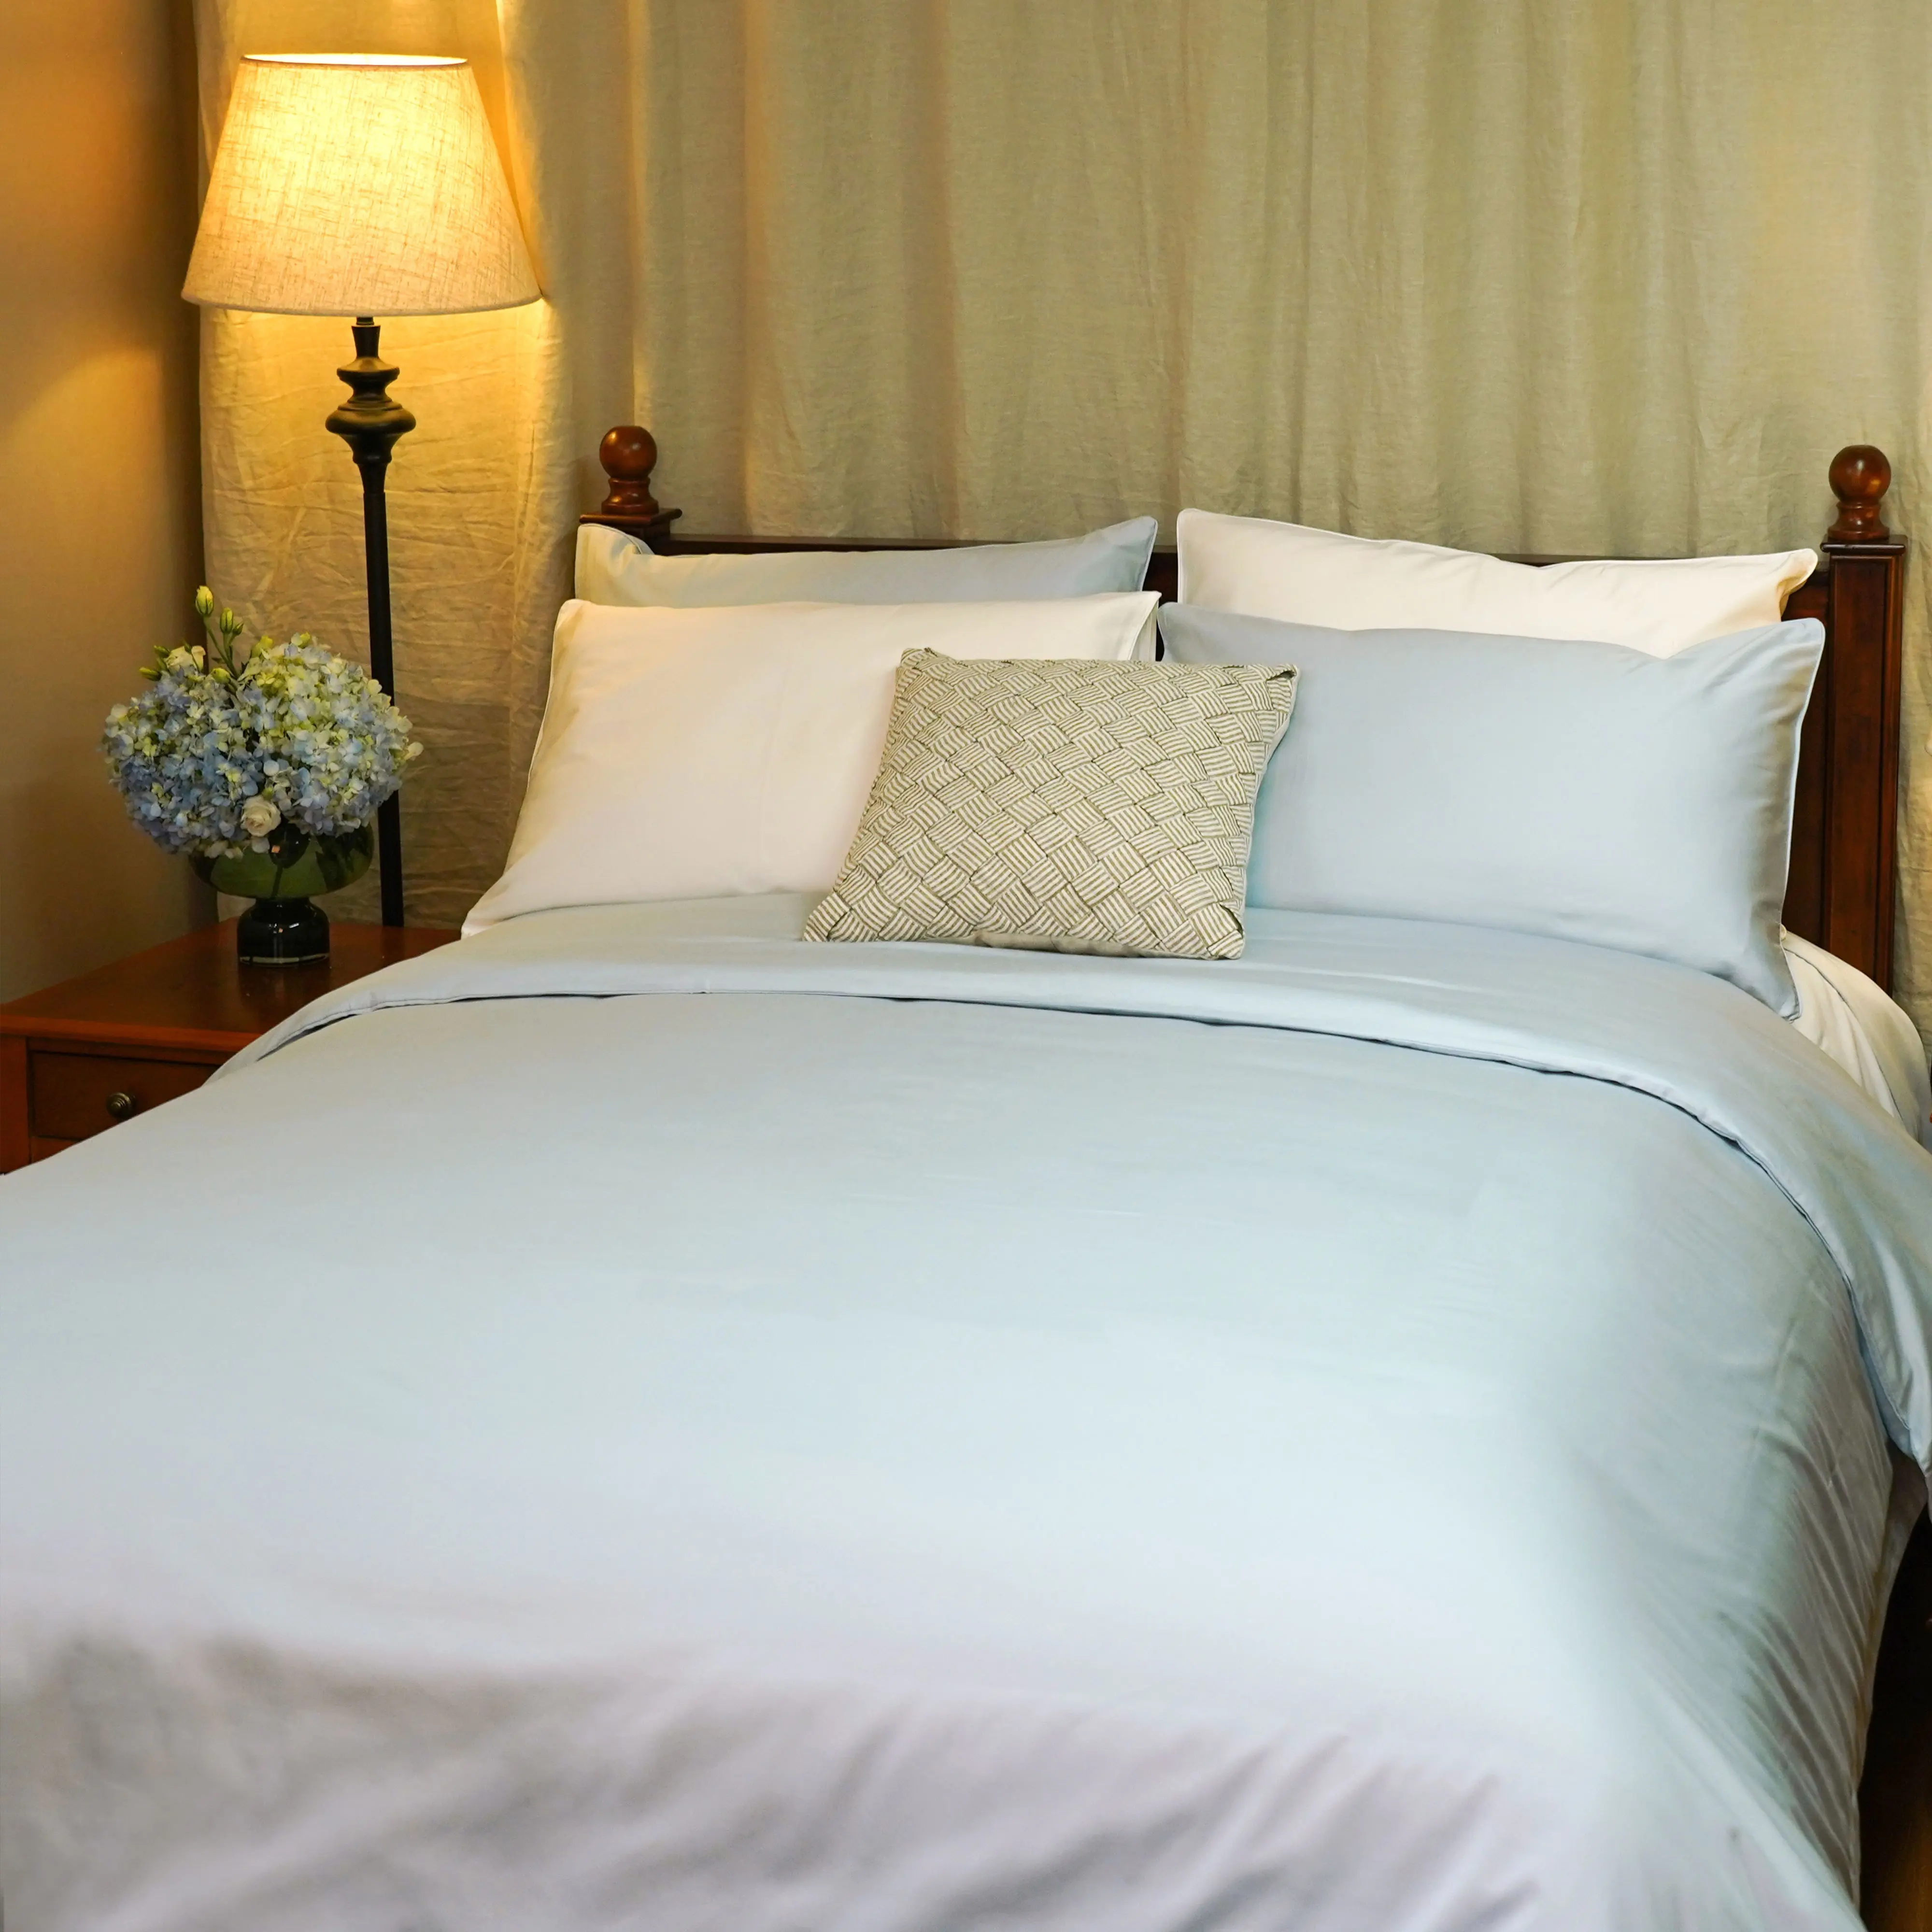 लक्जरी कस्टम 100% ऑर्गेनिक विस्कोस बांस फिटेड लिनन चादरें बिस्तर सेट